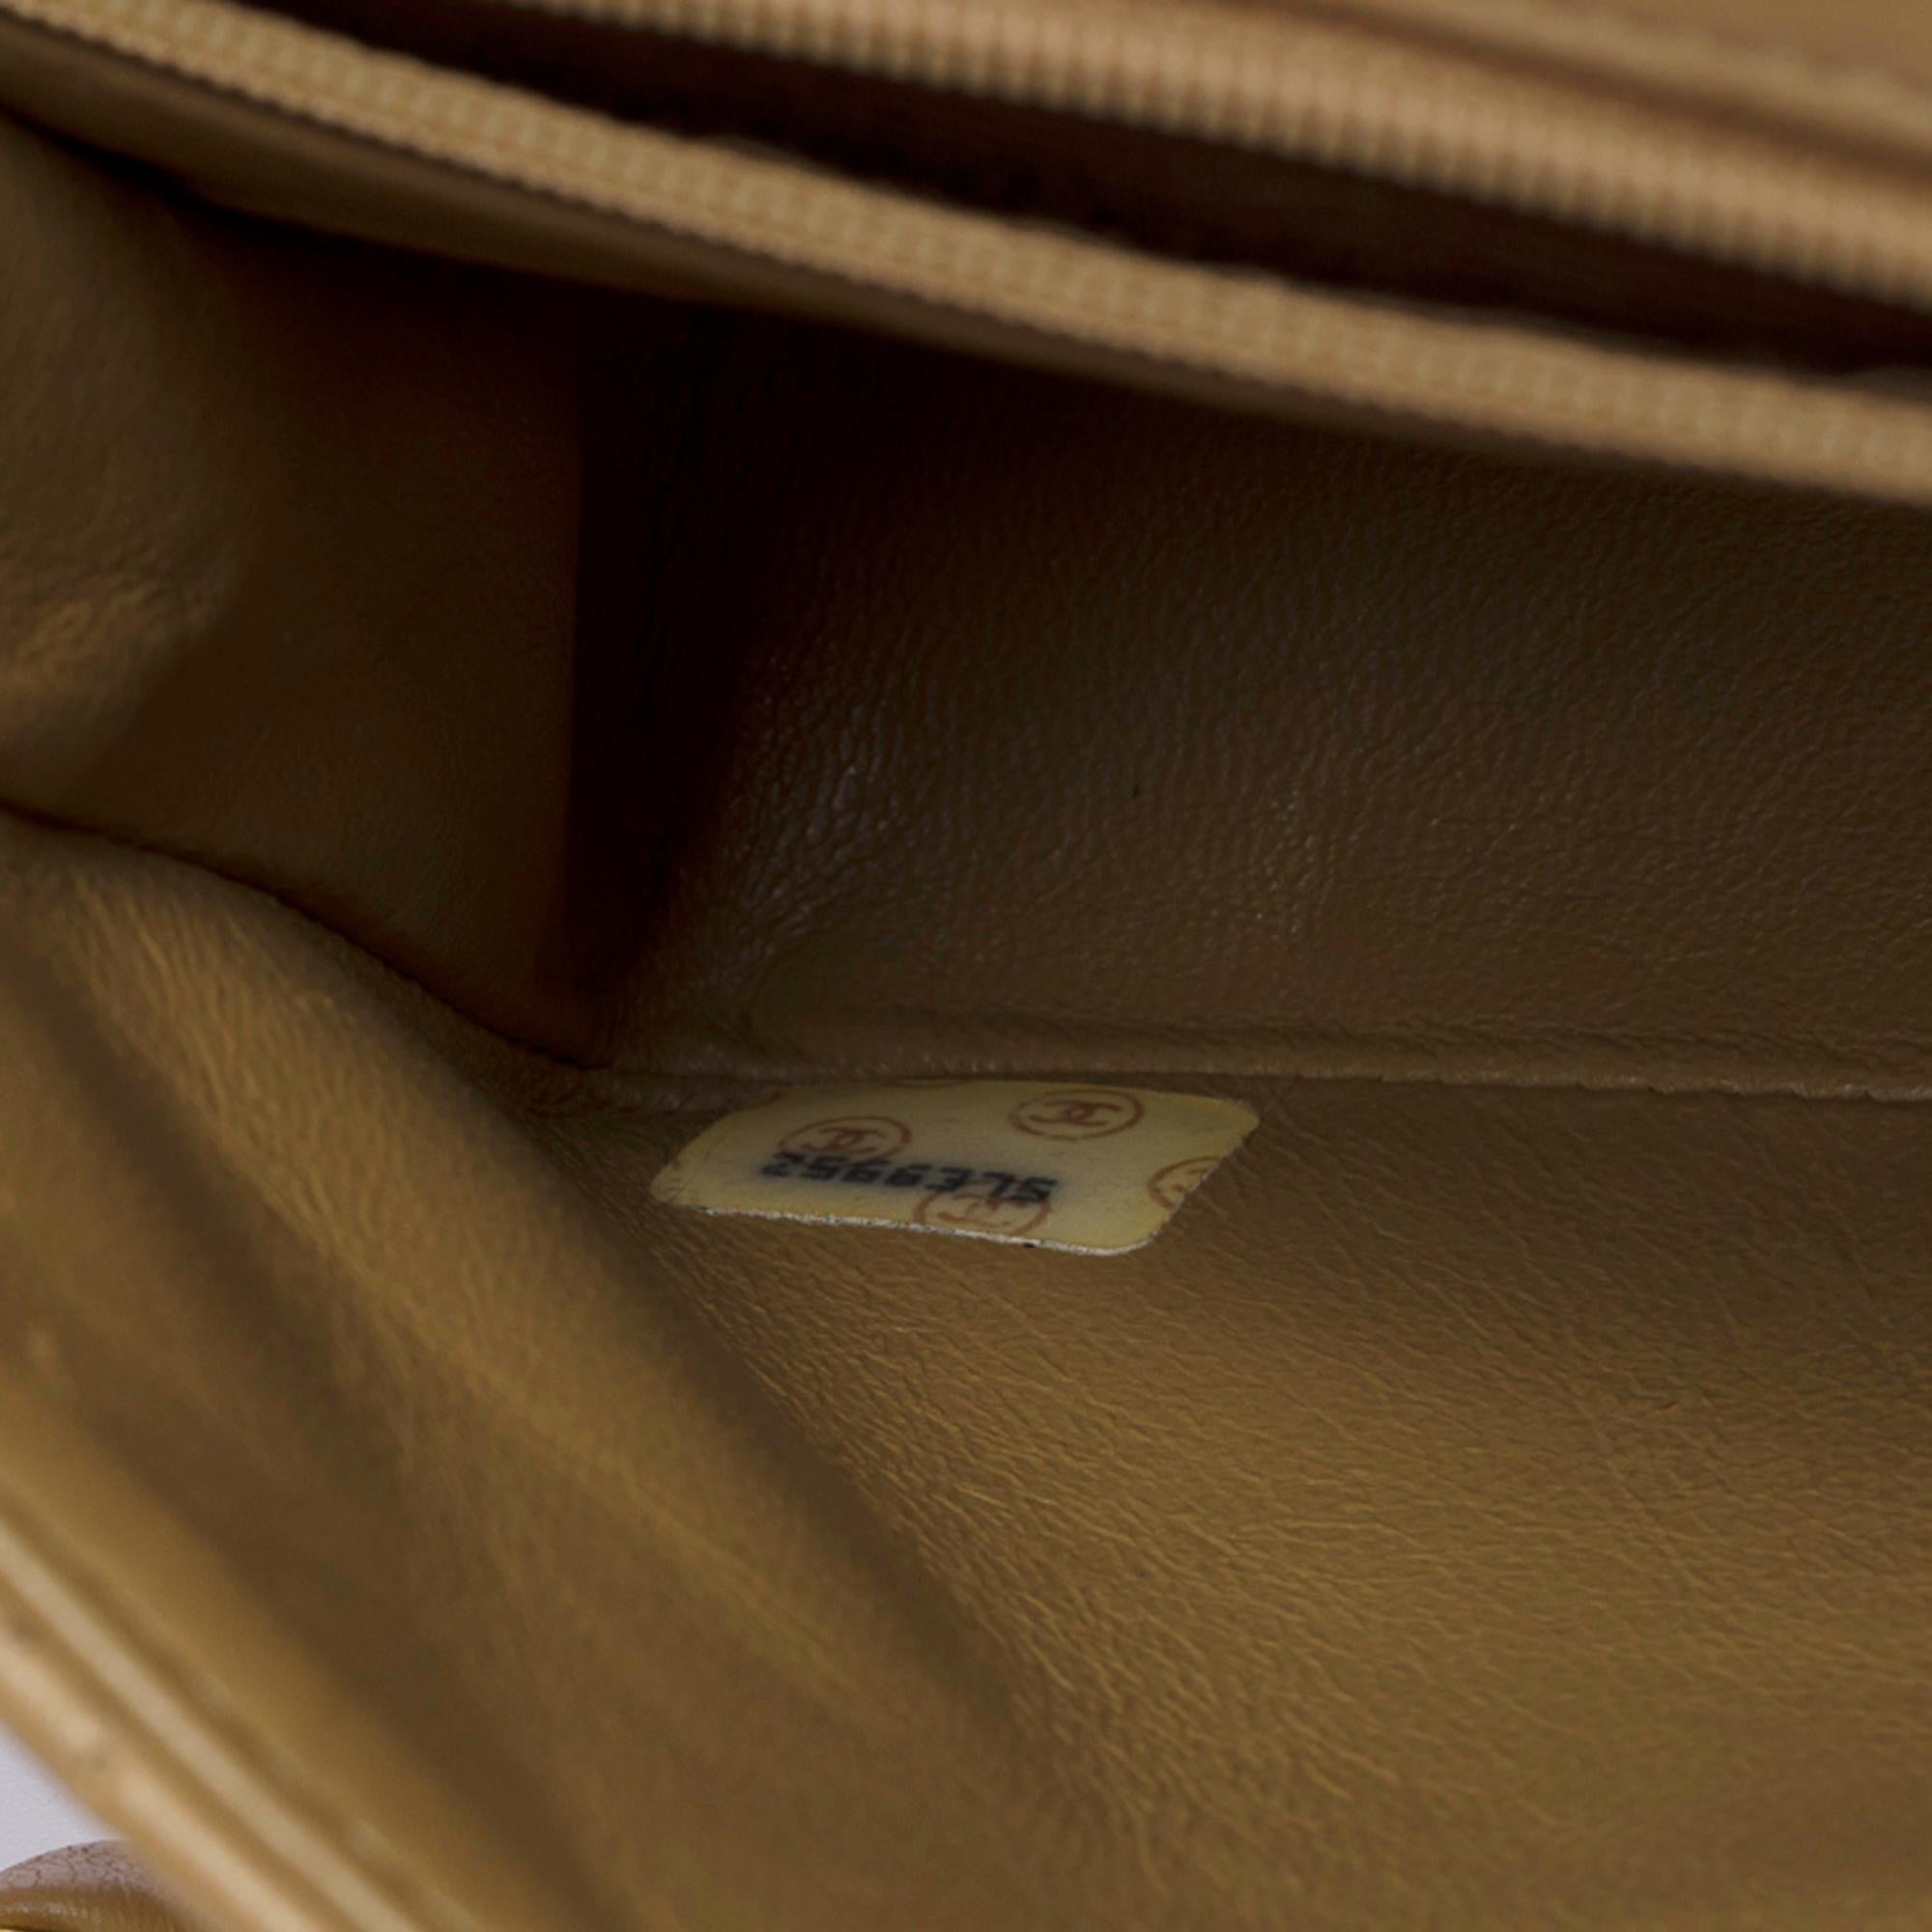 Mini sac à rabat Timeless de Chanel en cuir d'agneau matelassé beige, GHW 2